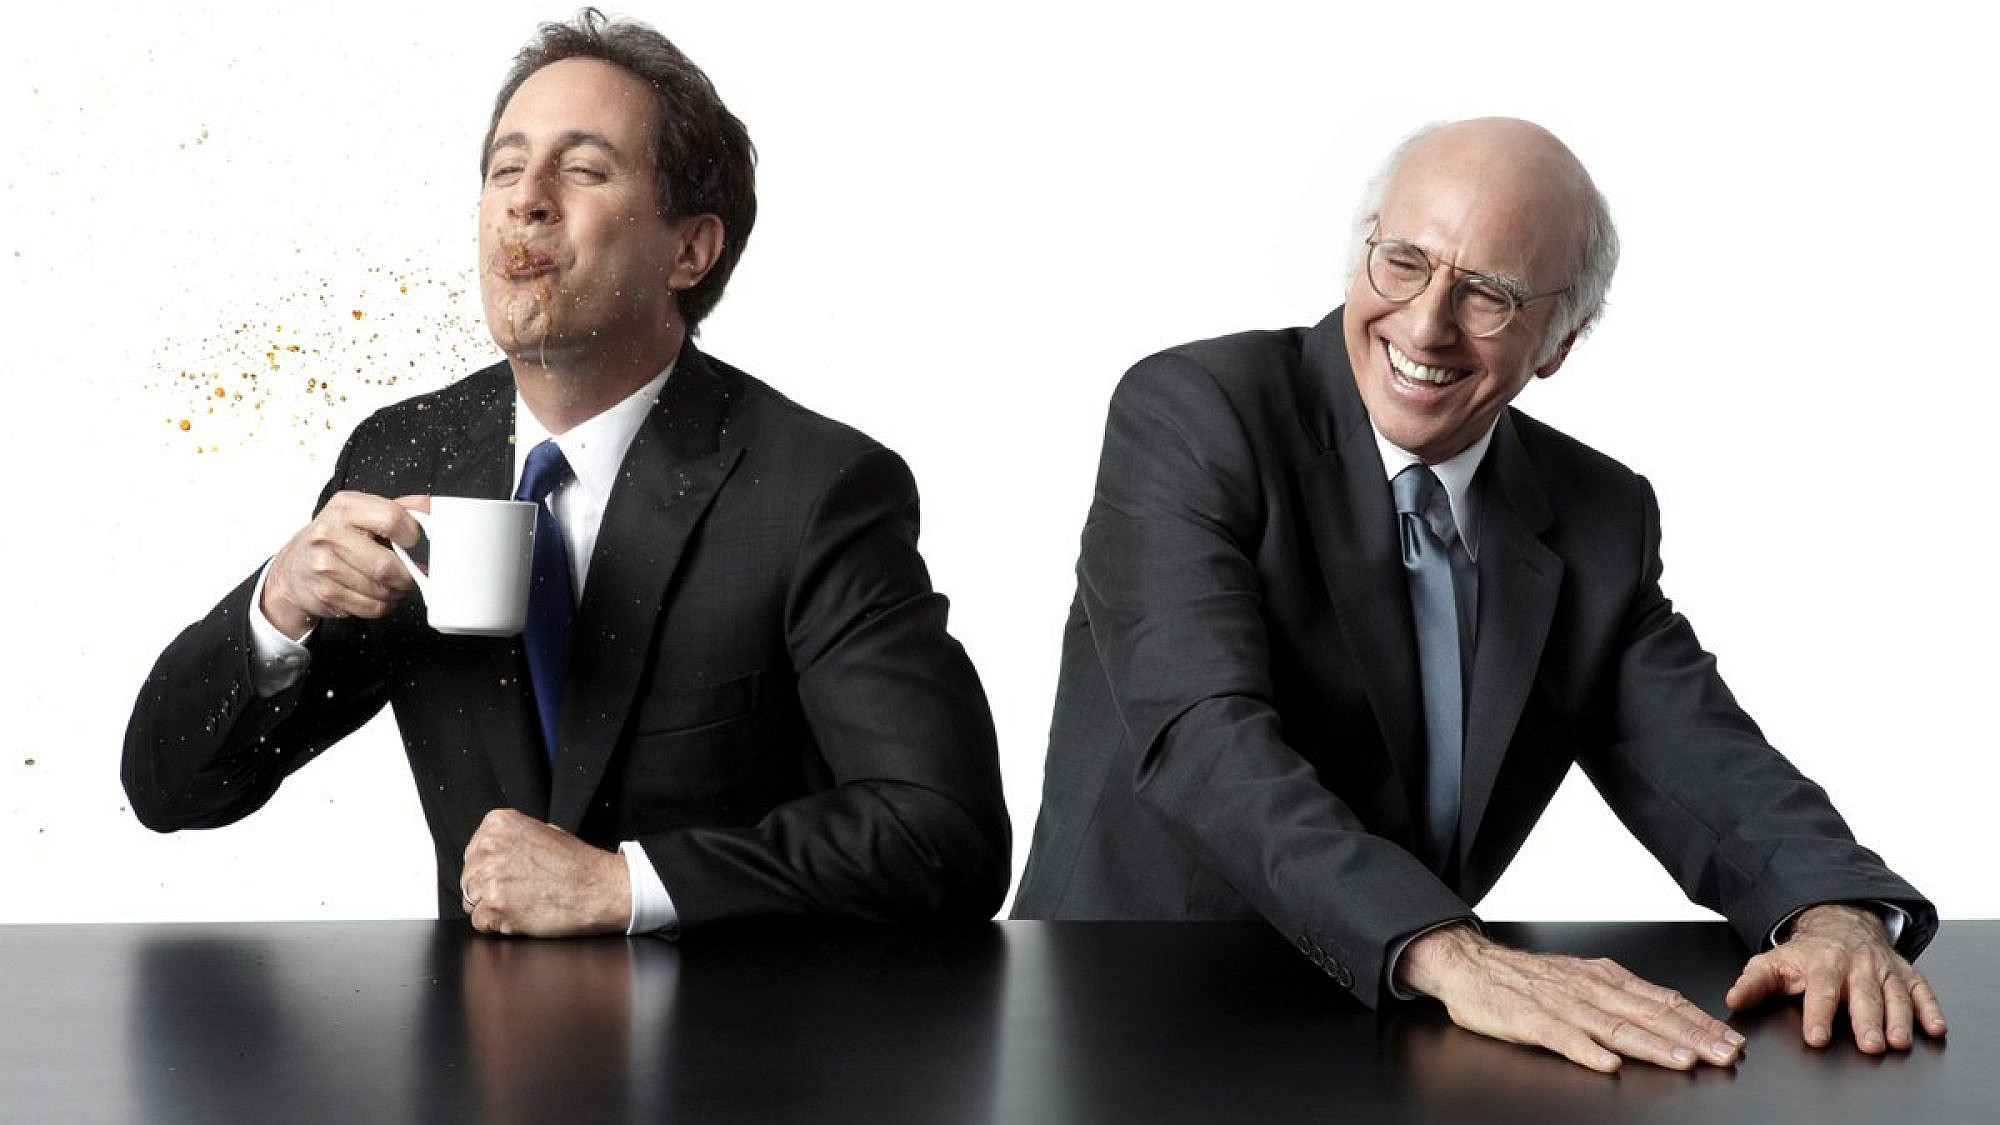 הלוואי שהיו שולטים בעולם. לארי דיוויד וג'רי סיינפלד ב"קומיקאים במכוניות שותים קפה" (צילום: יחסי ציבור)